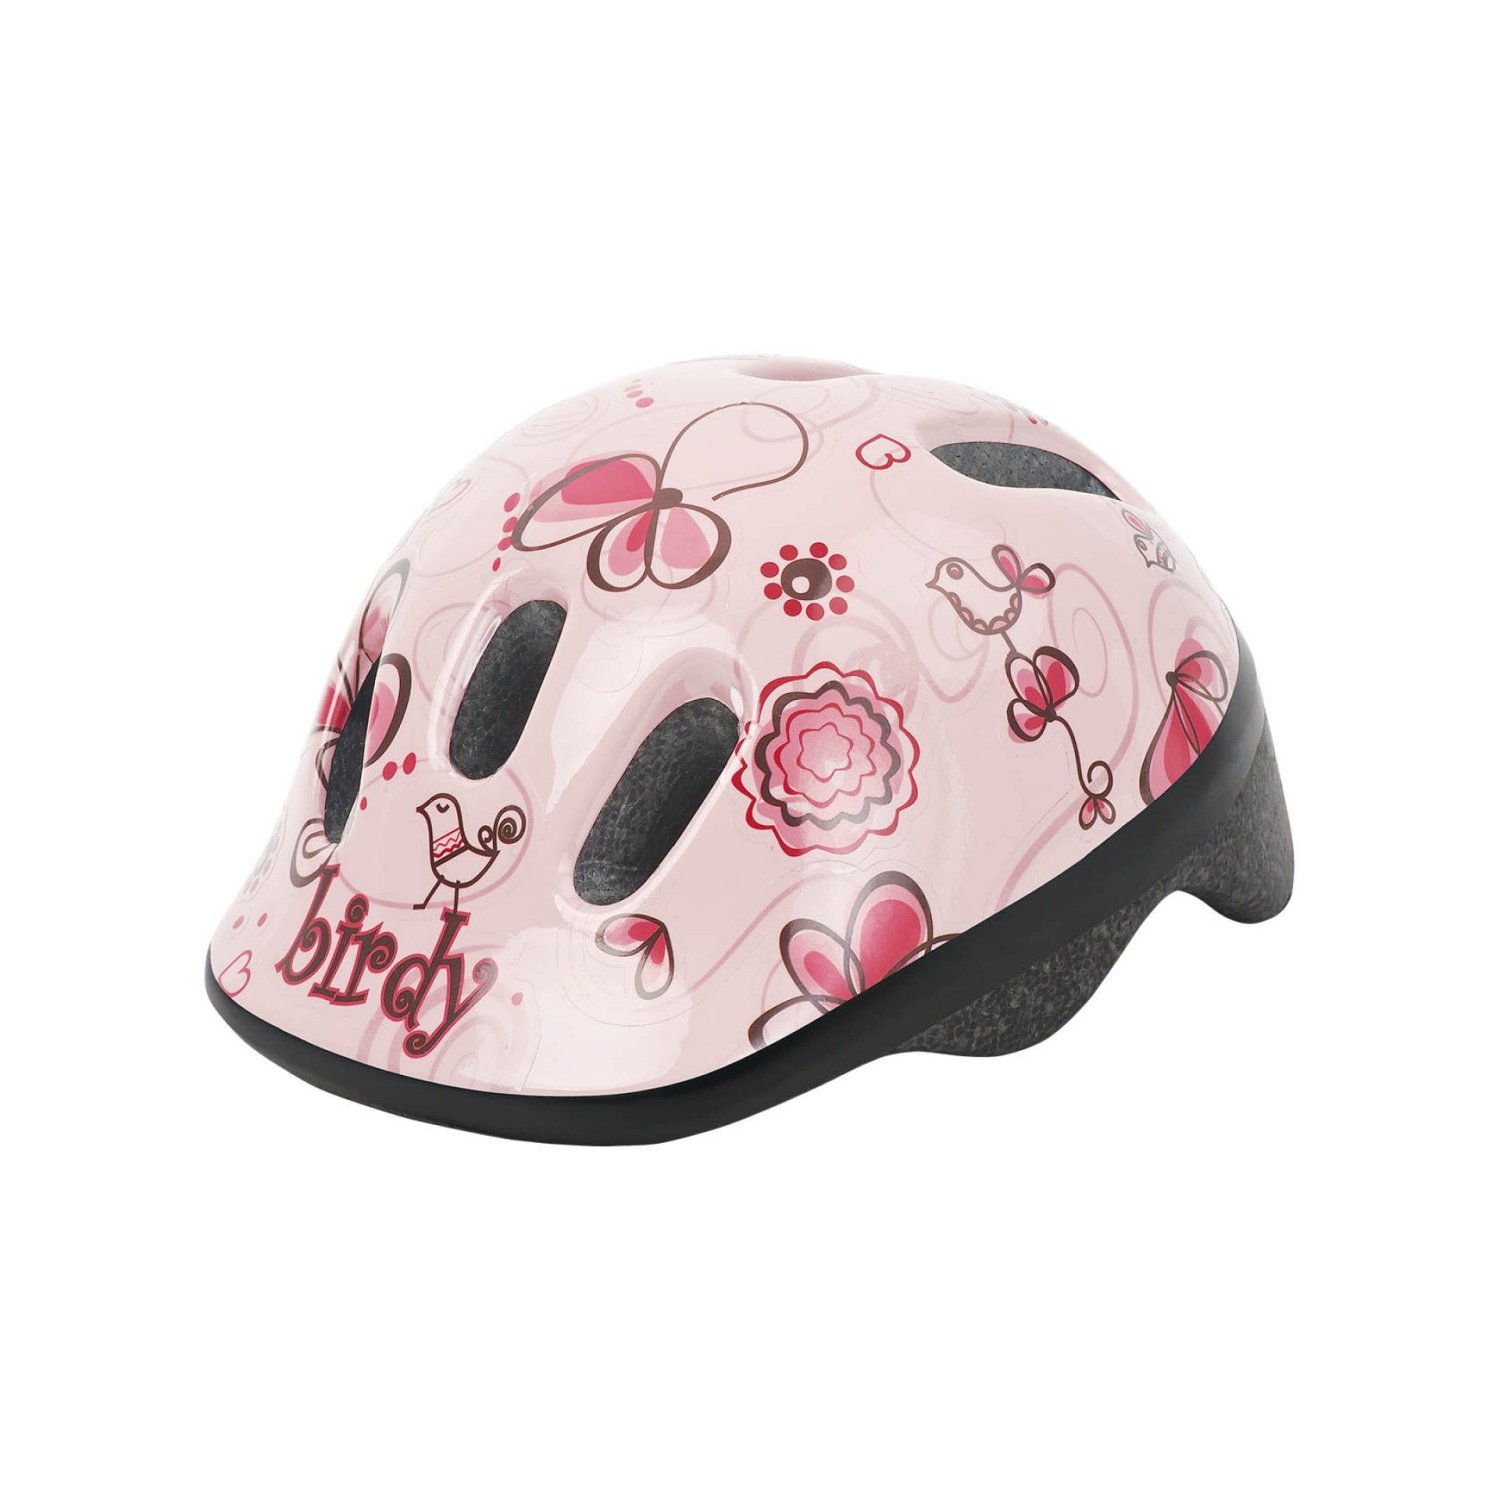 фото Шлем велосипедный детский polisport birdy, cream/pink (размер: xxs (обхват головы: 44-48 см))